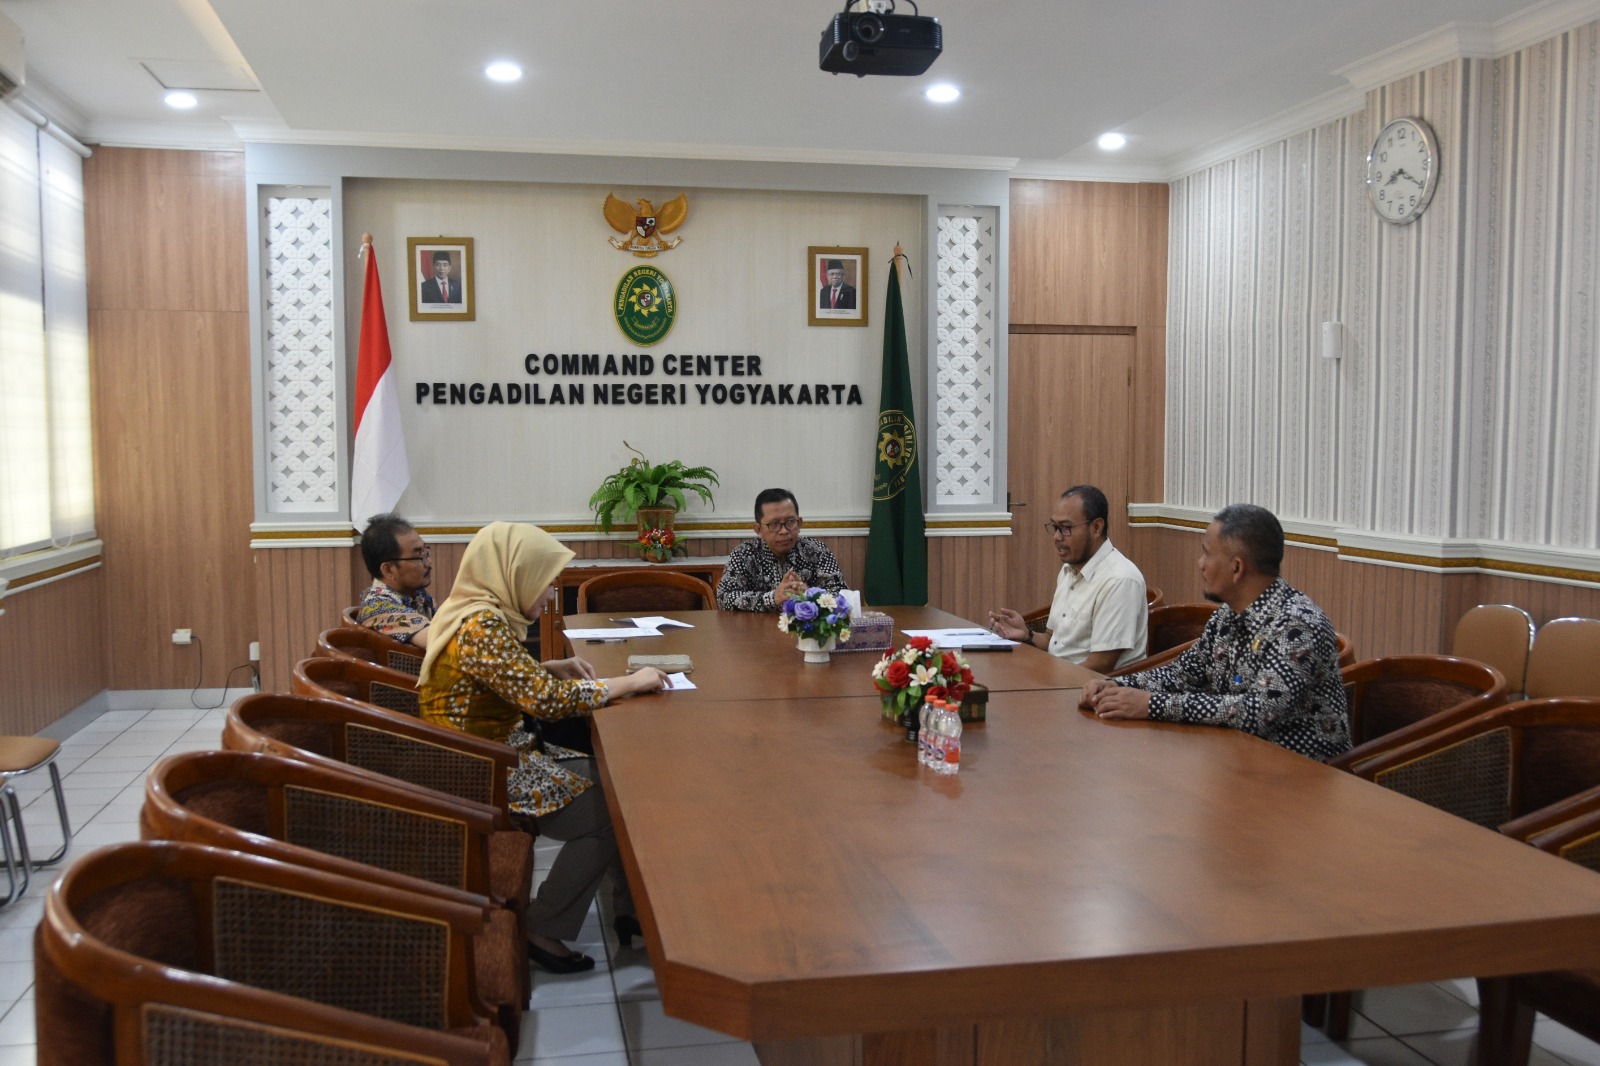 Permohonan Wawancara terhadap Hakim Pengadilan Negeri Yogyakarta oleh Komisi Yudisial RI